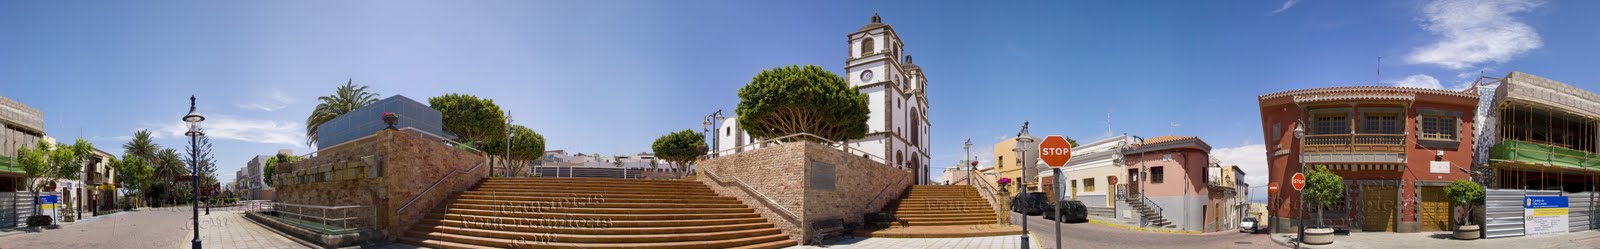 [Ingenio+Iglesia+Ayuntamiento+panoramio.jpg]